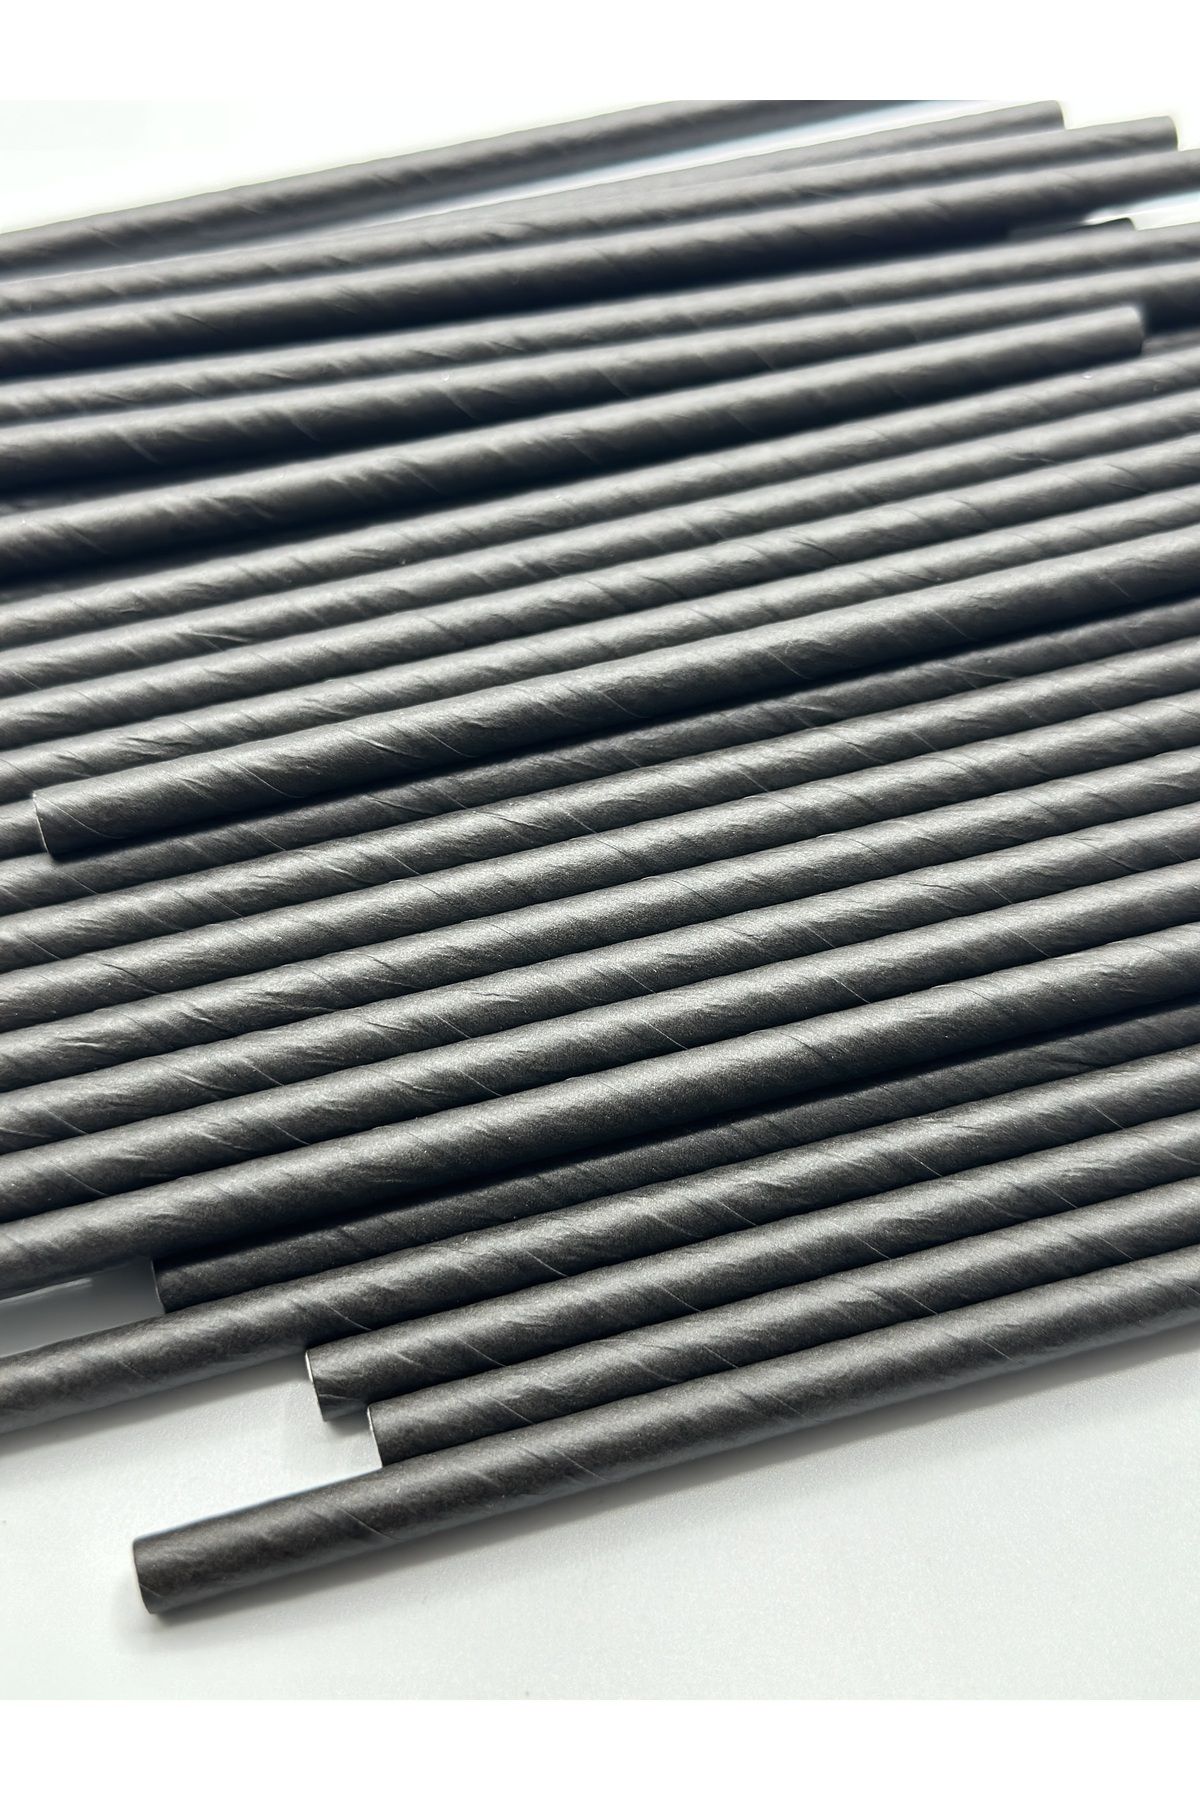 Pars Kağıt Pipet 100 Adet Çap:6 mm Uzunluk:20 cm- Doğayla Dost Geri Dönüştürülebilir Kağıt Pipet